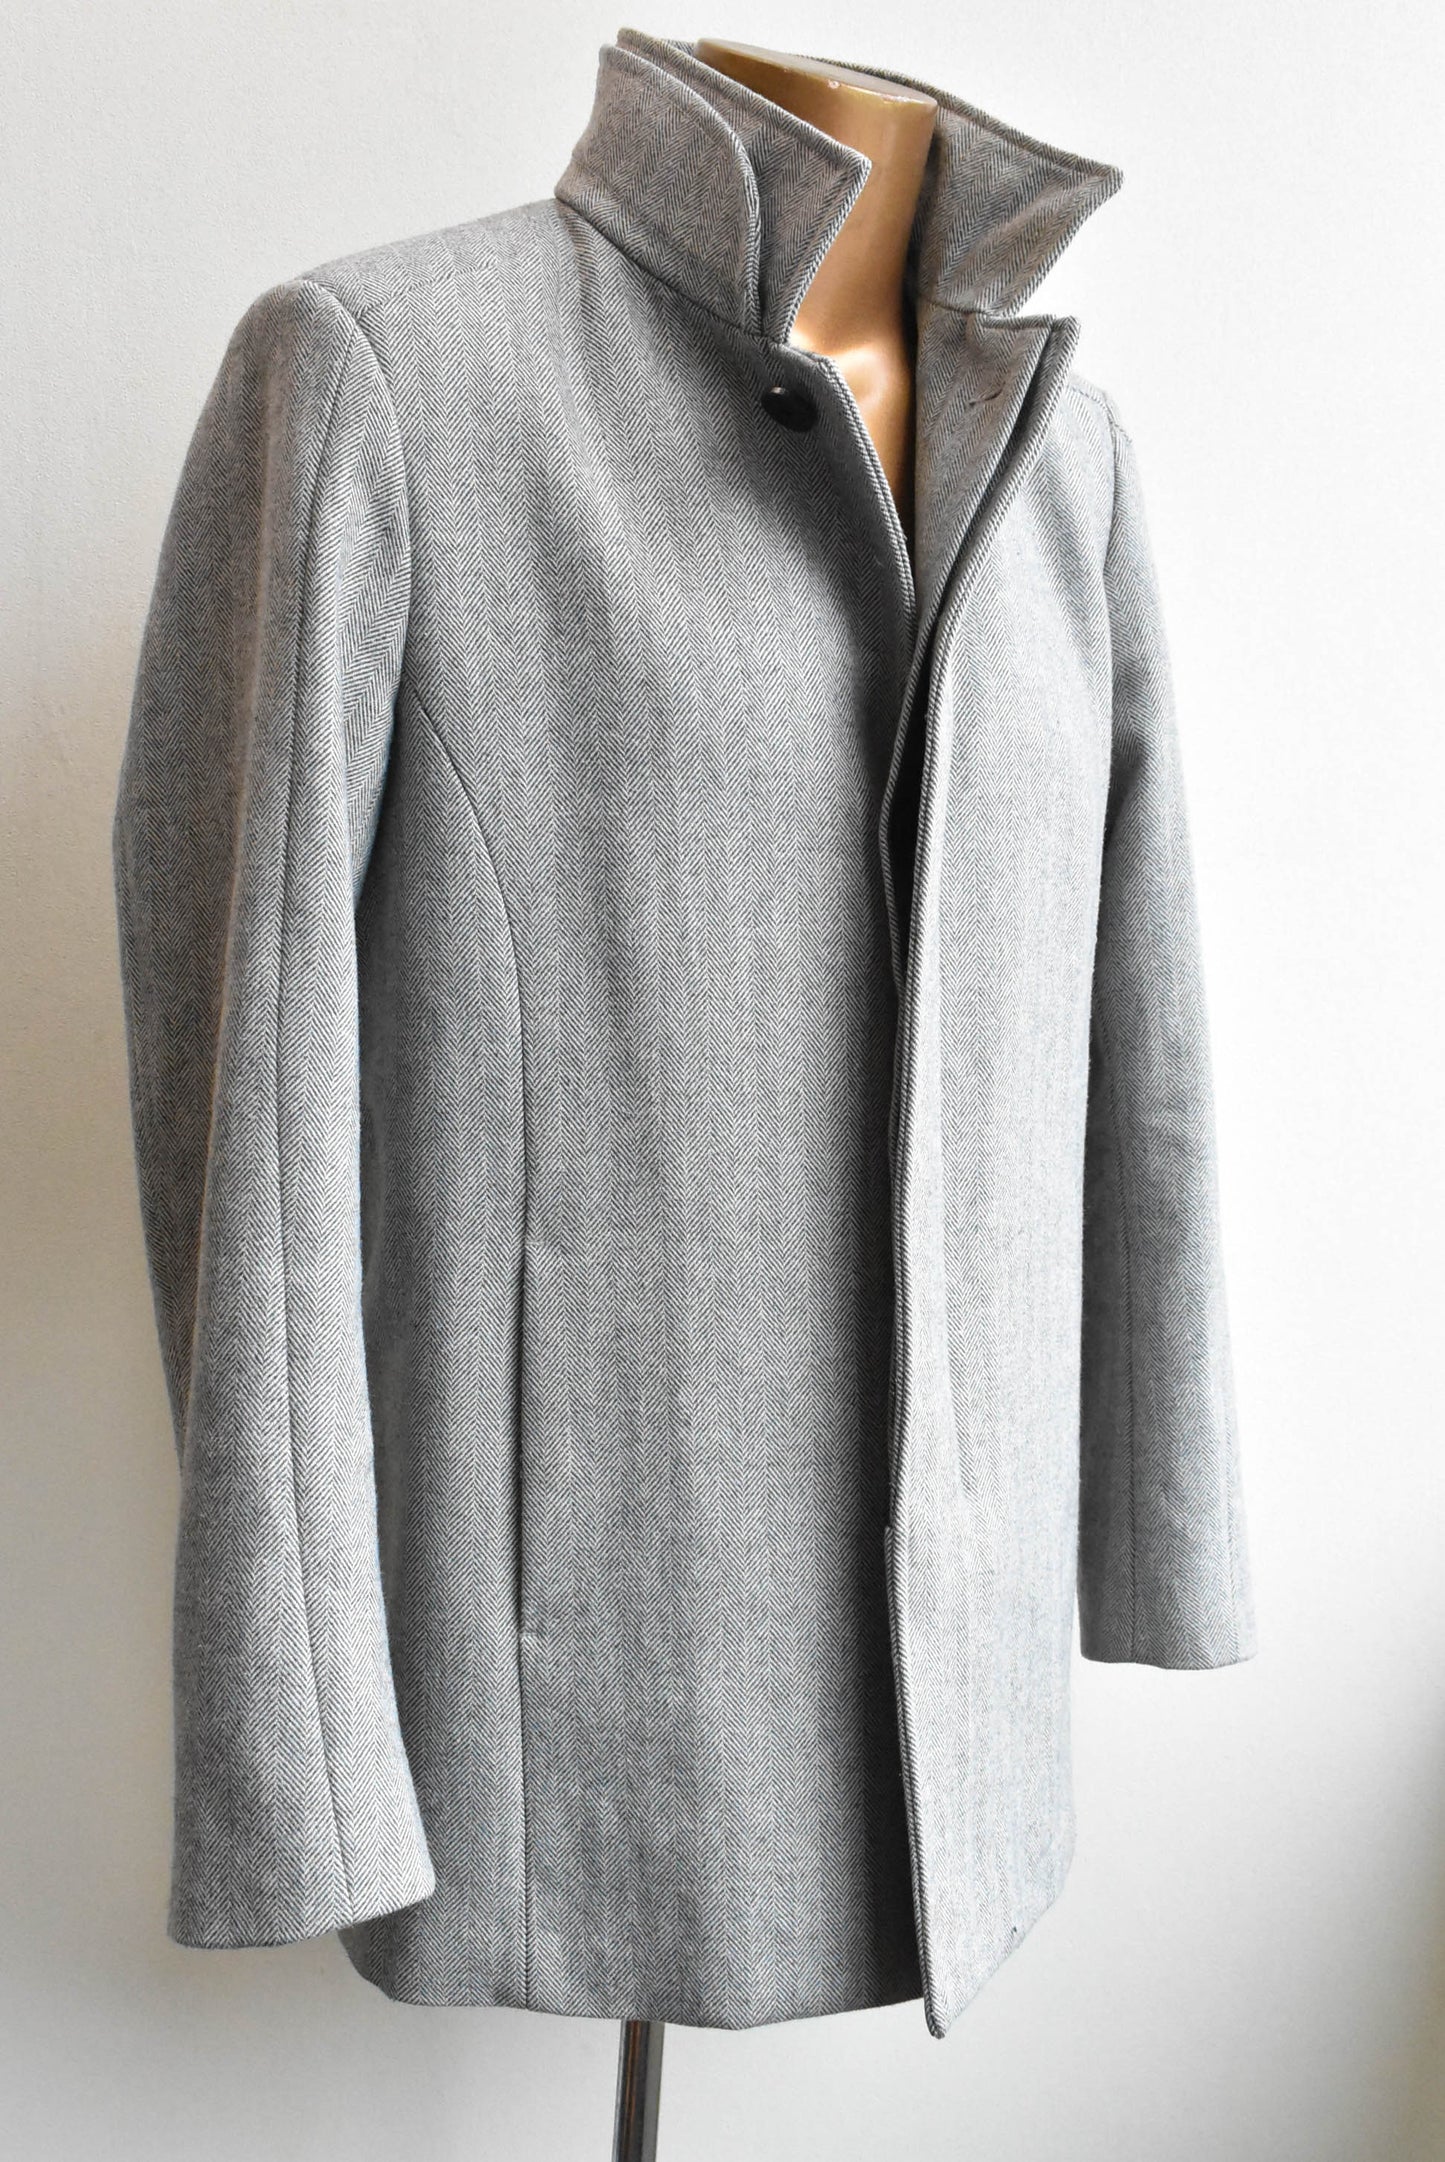 Barkers grey coat, size L